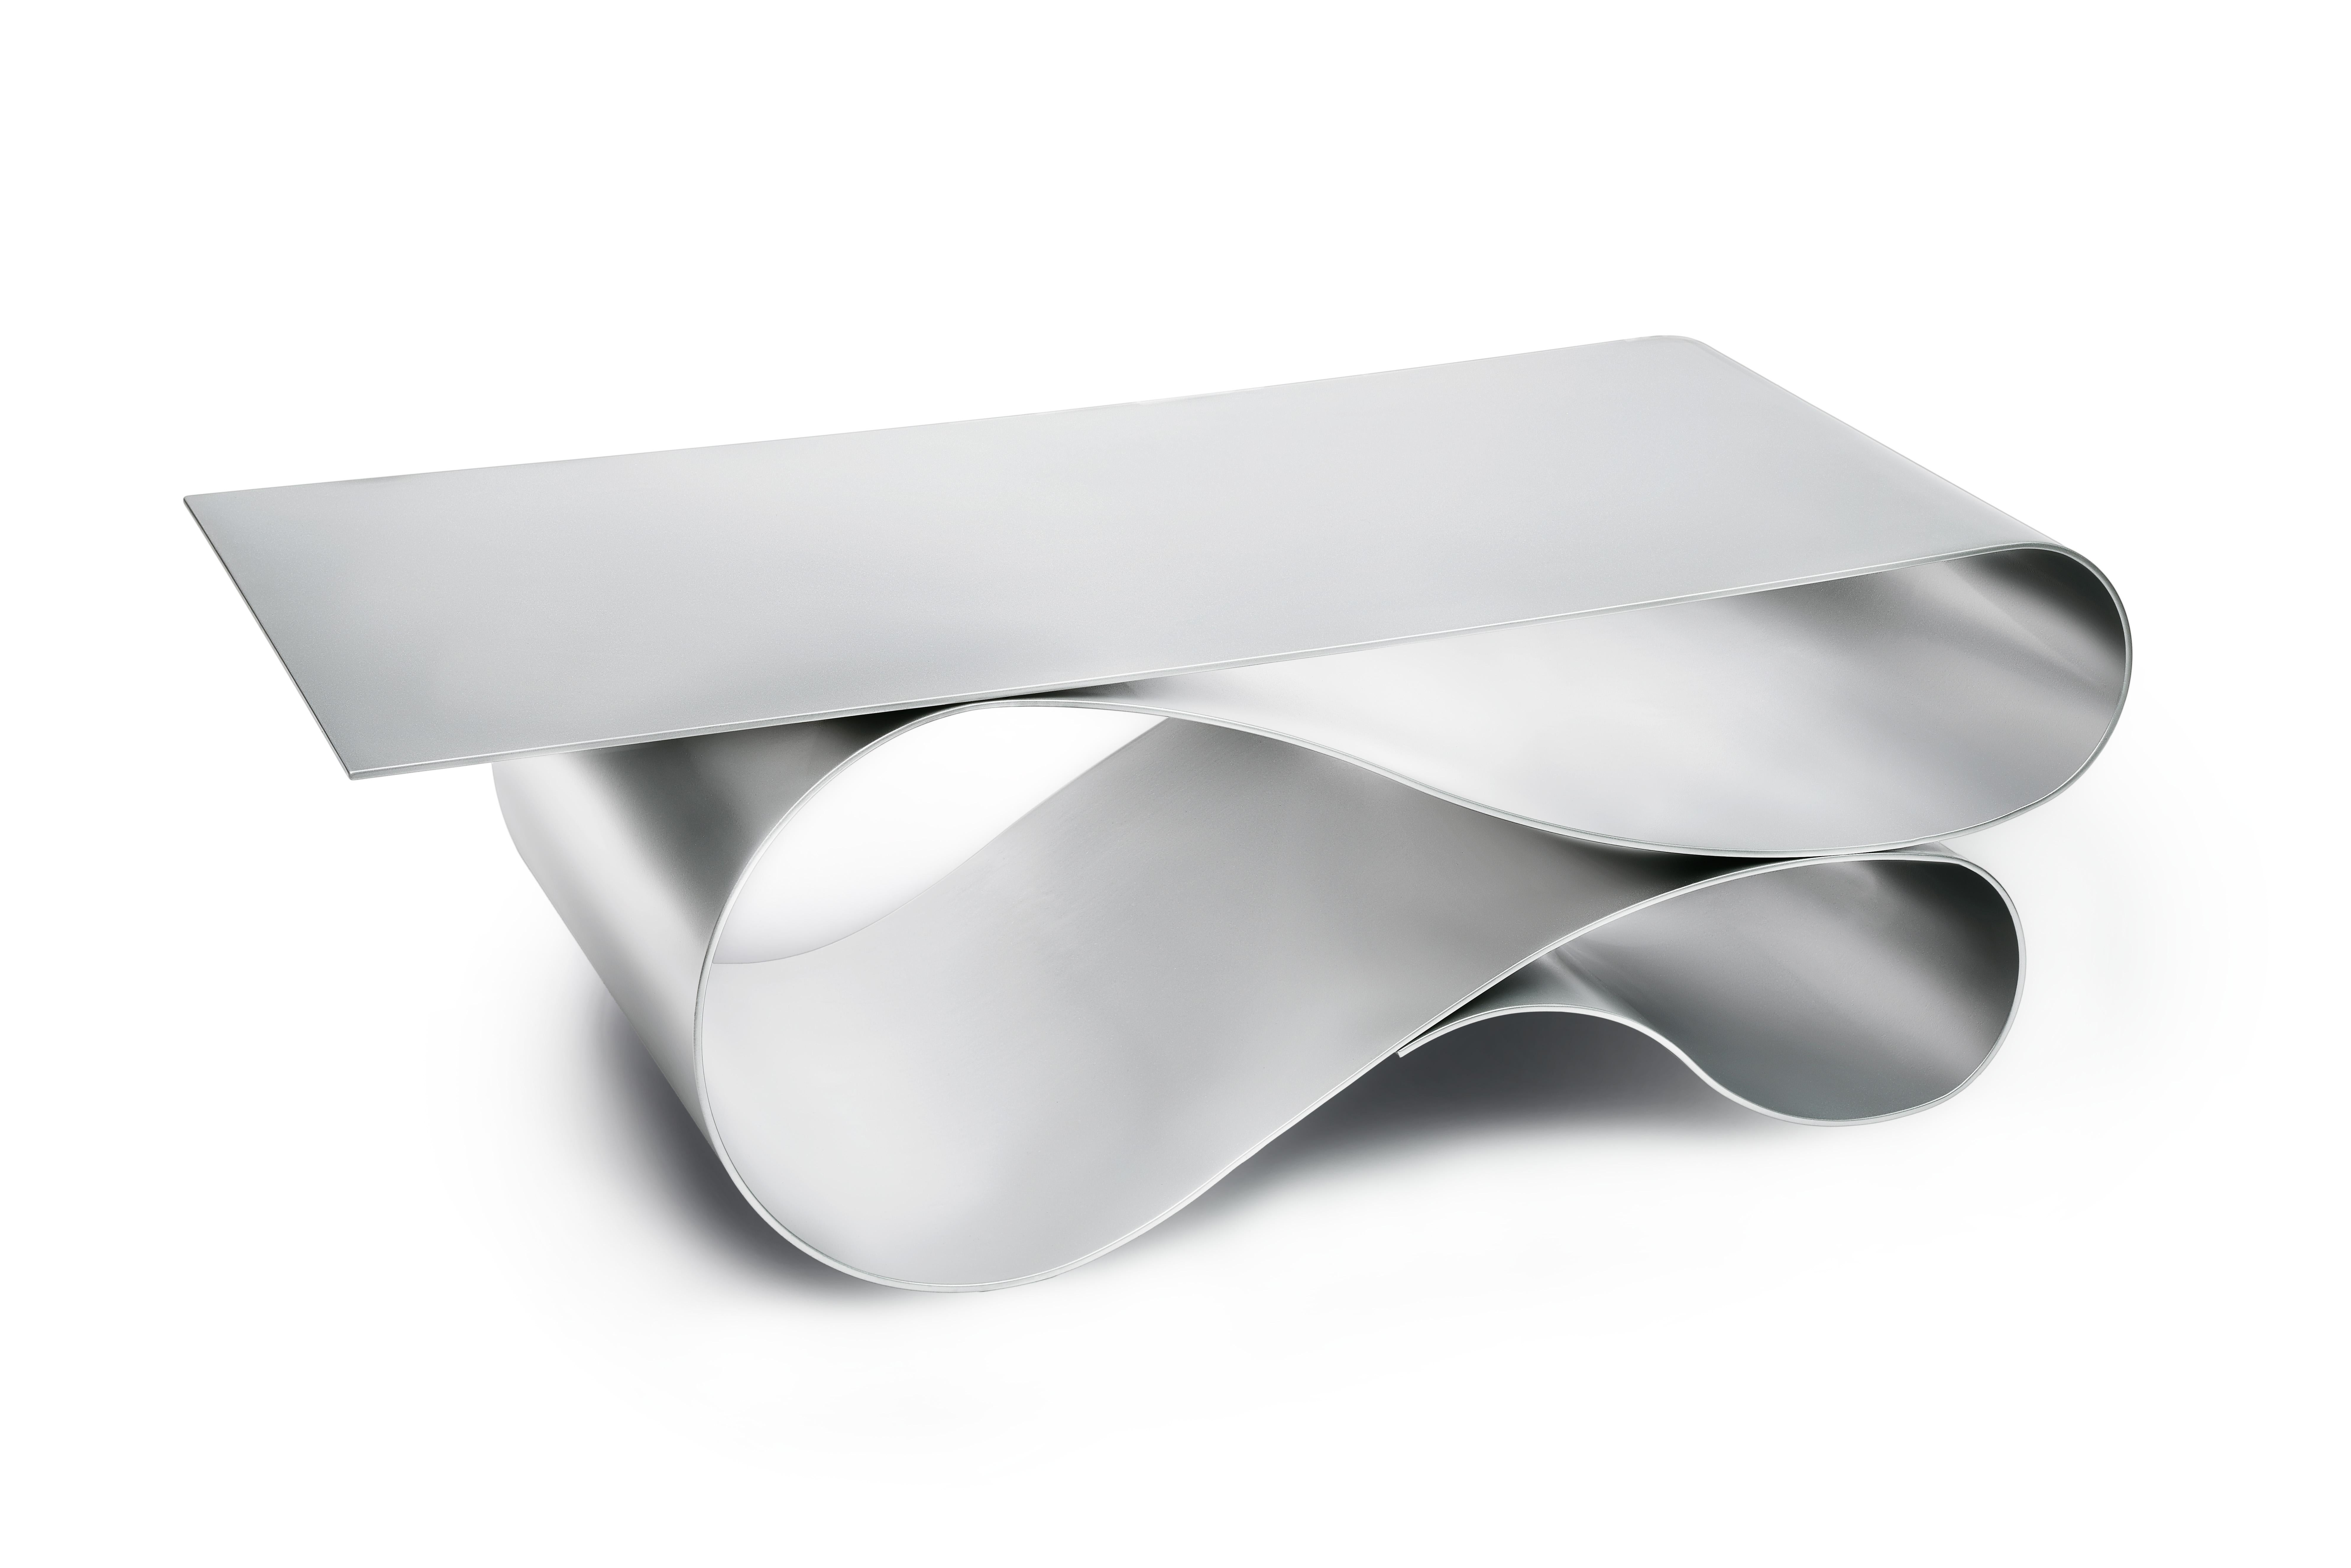 La forme lyrique iconique de la série primée de tables basses Whorl est cette fois-ci exécutée en aluminium revêtu de poudre. L'aluminium d'un quart de pouce d'épaisseur est fabriqué dans les plis magiques de la forme Whorl.
Montré ici en couleur